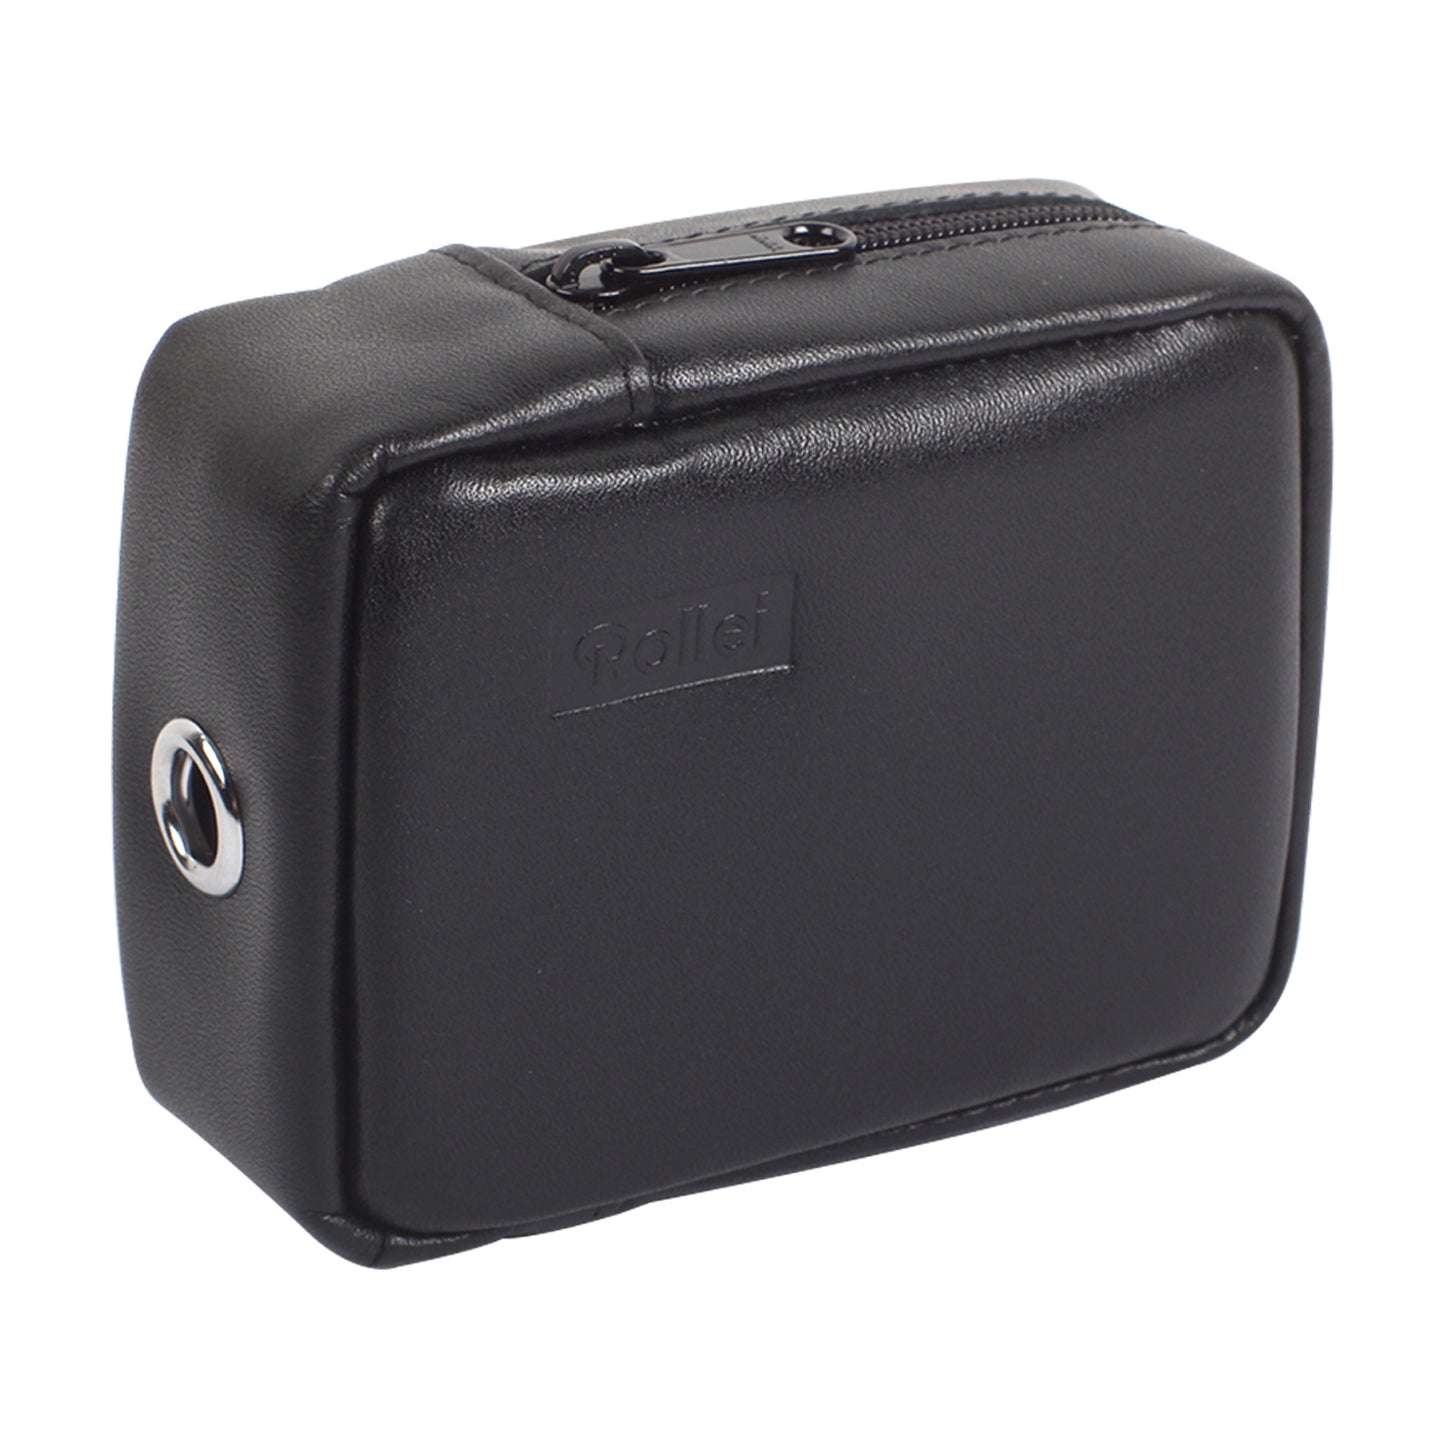 Kameratasche aus weichem Leder, tragbare Tasche für Rollei 35 35T 35S 35SE